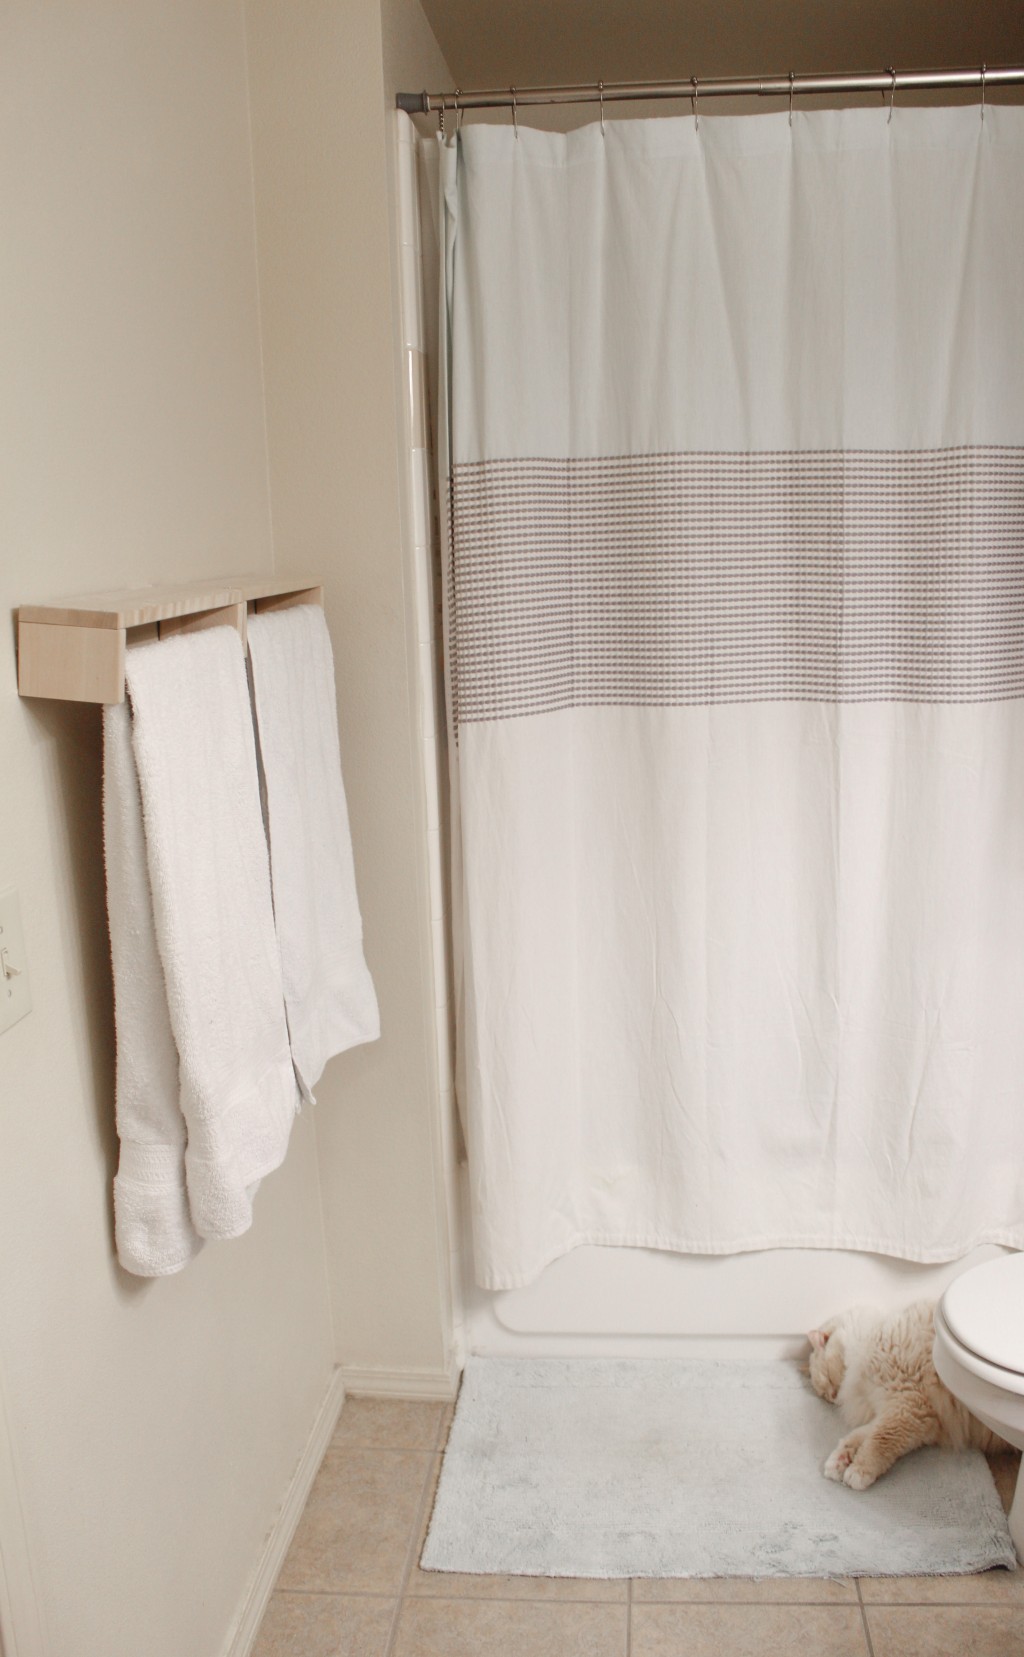 专家建议定期清洗浴帘。 unsplash